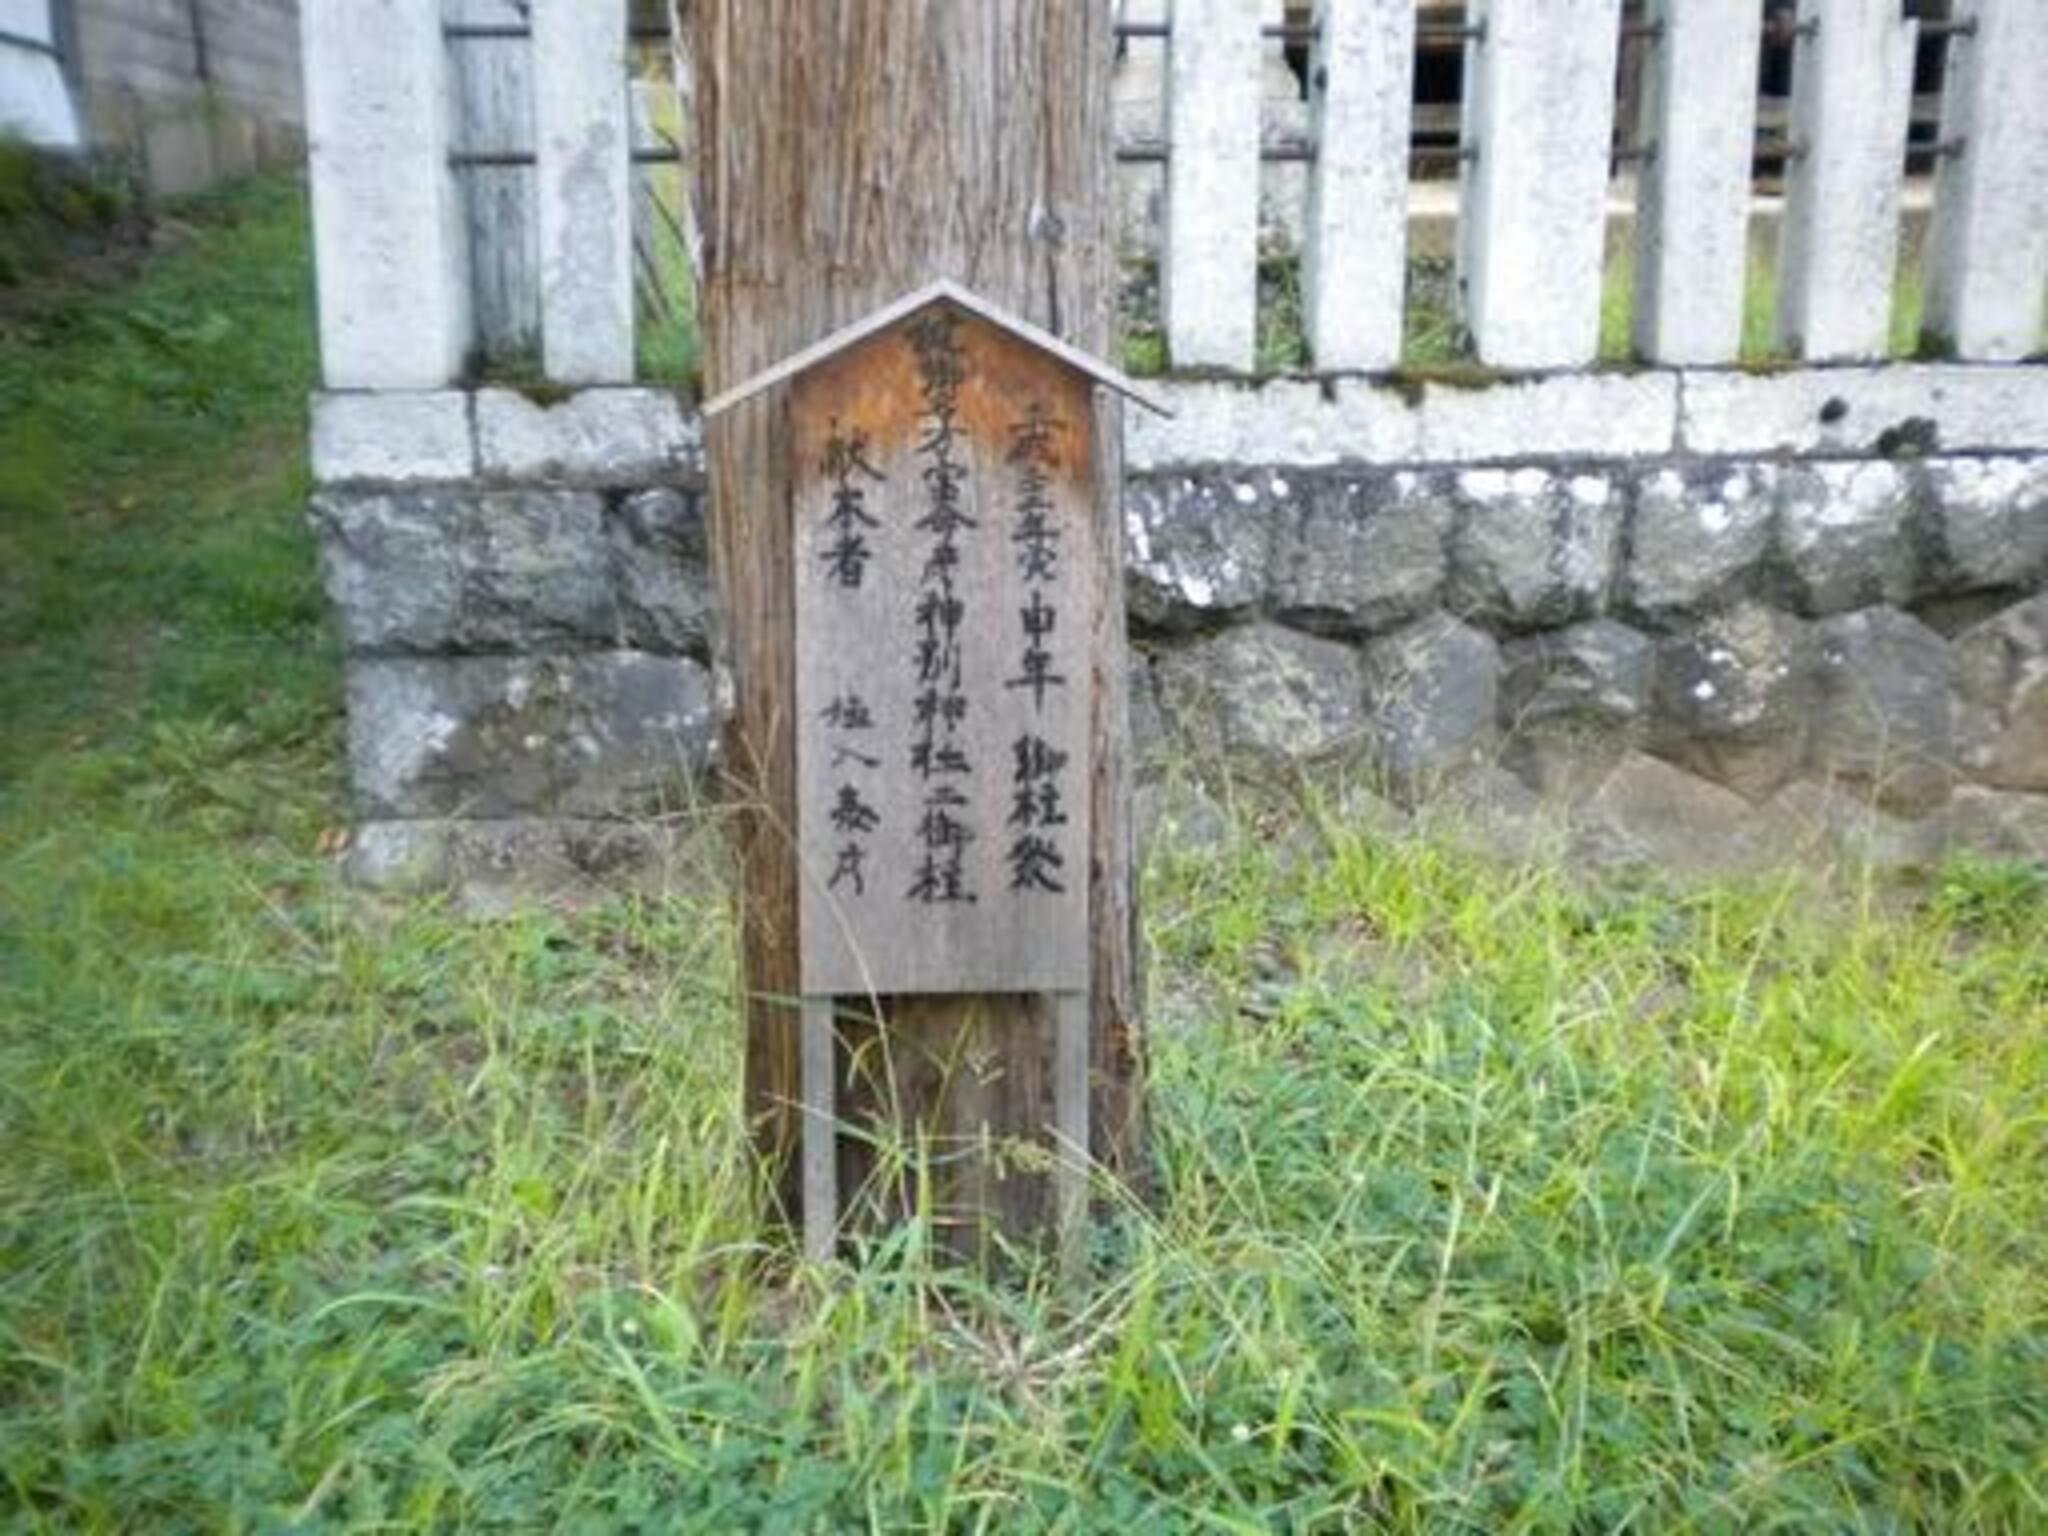 健御名方富命彦神別神社 - 長野市信州新町水内/神社 | Yahoo!マップ